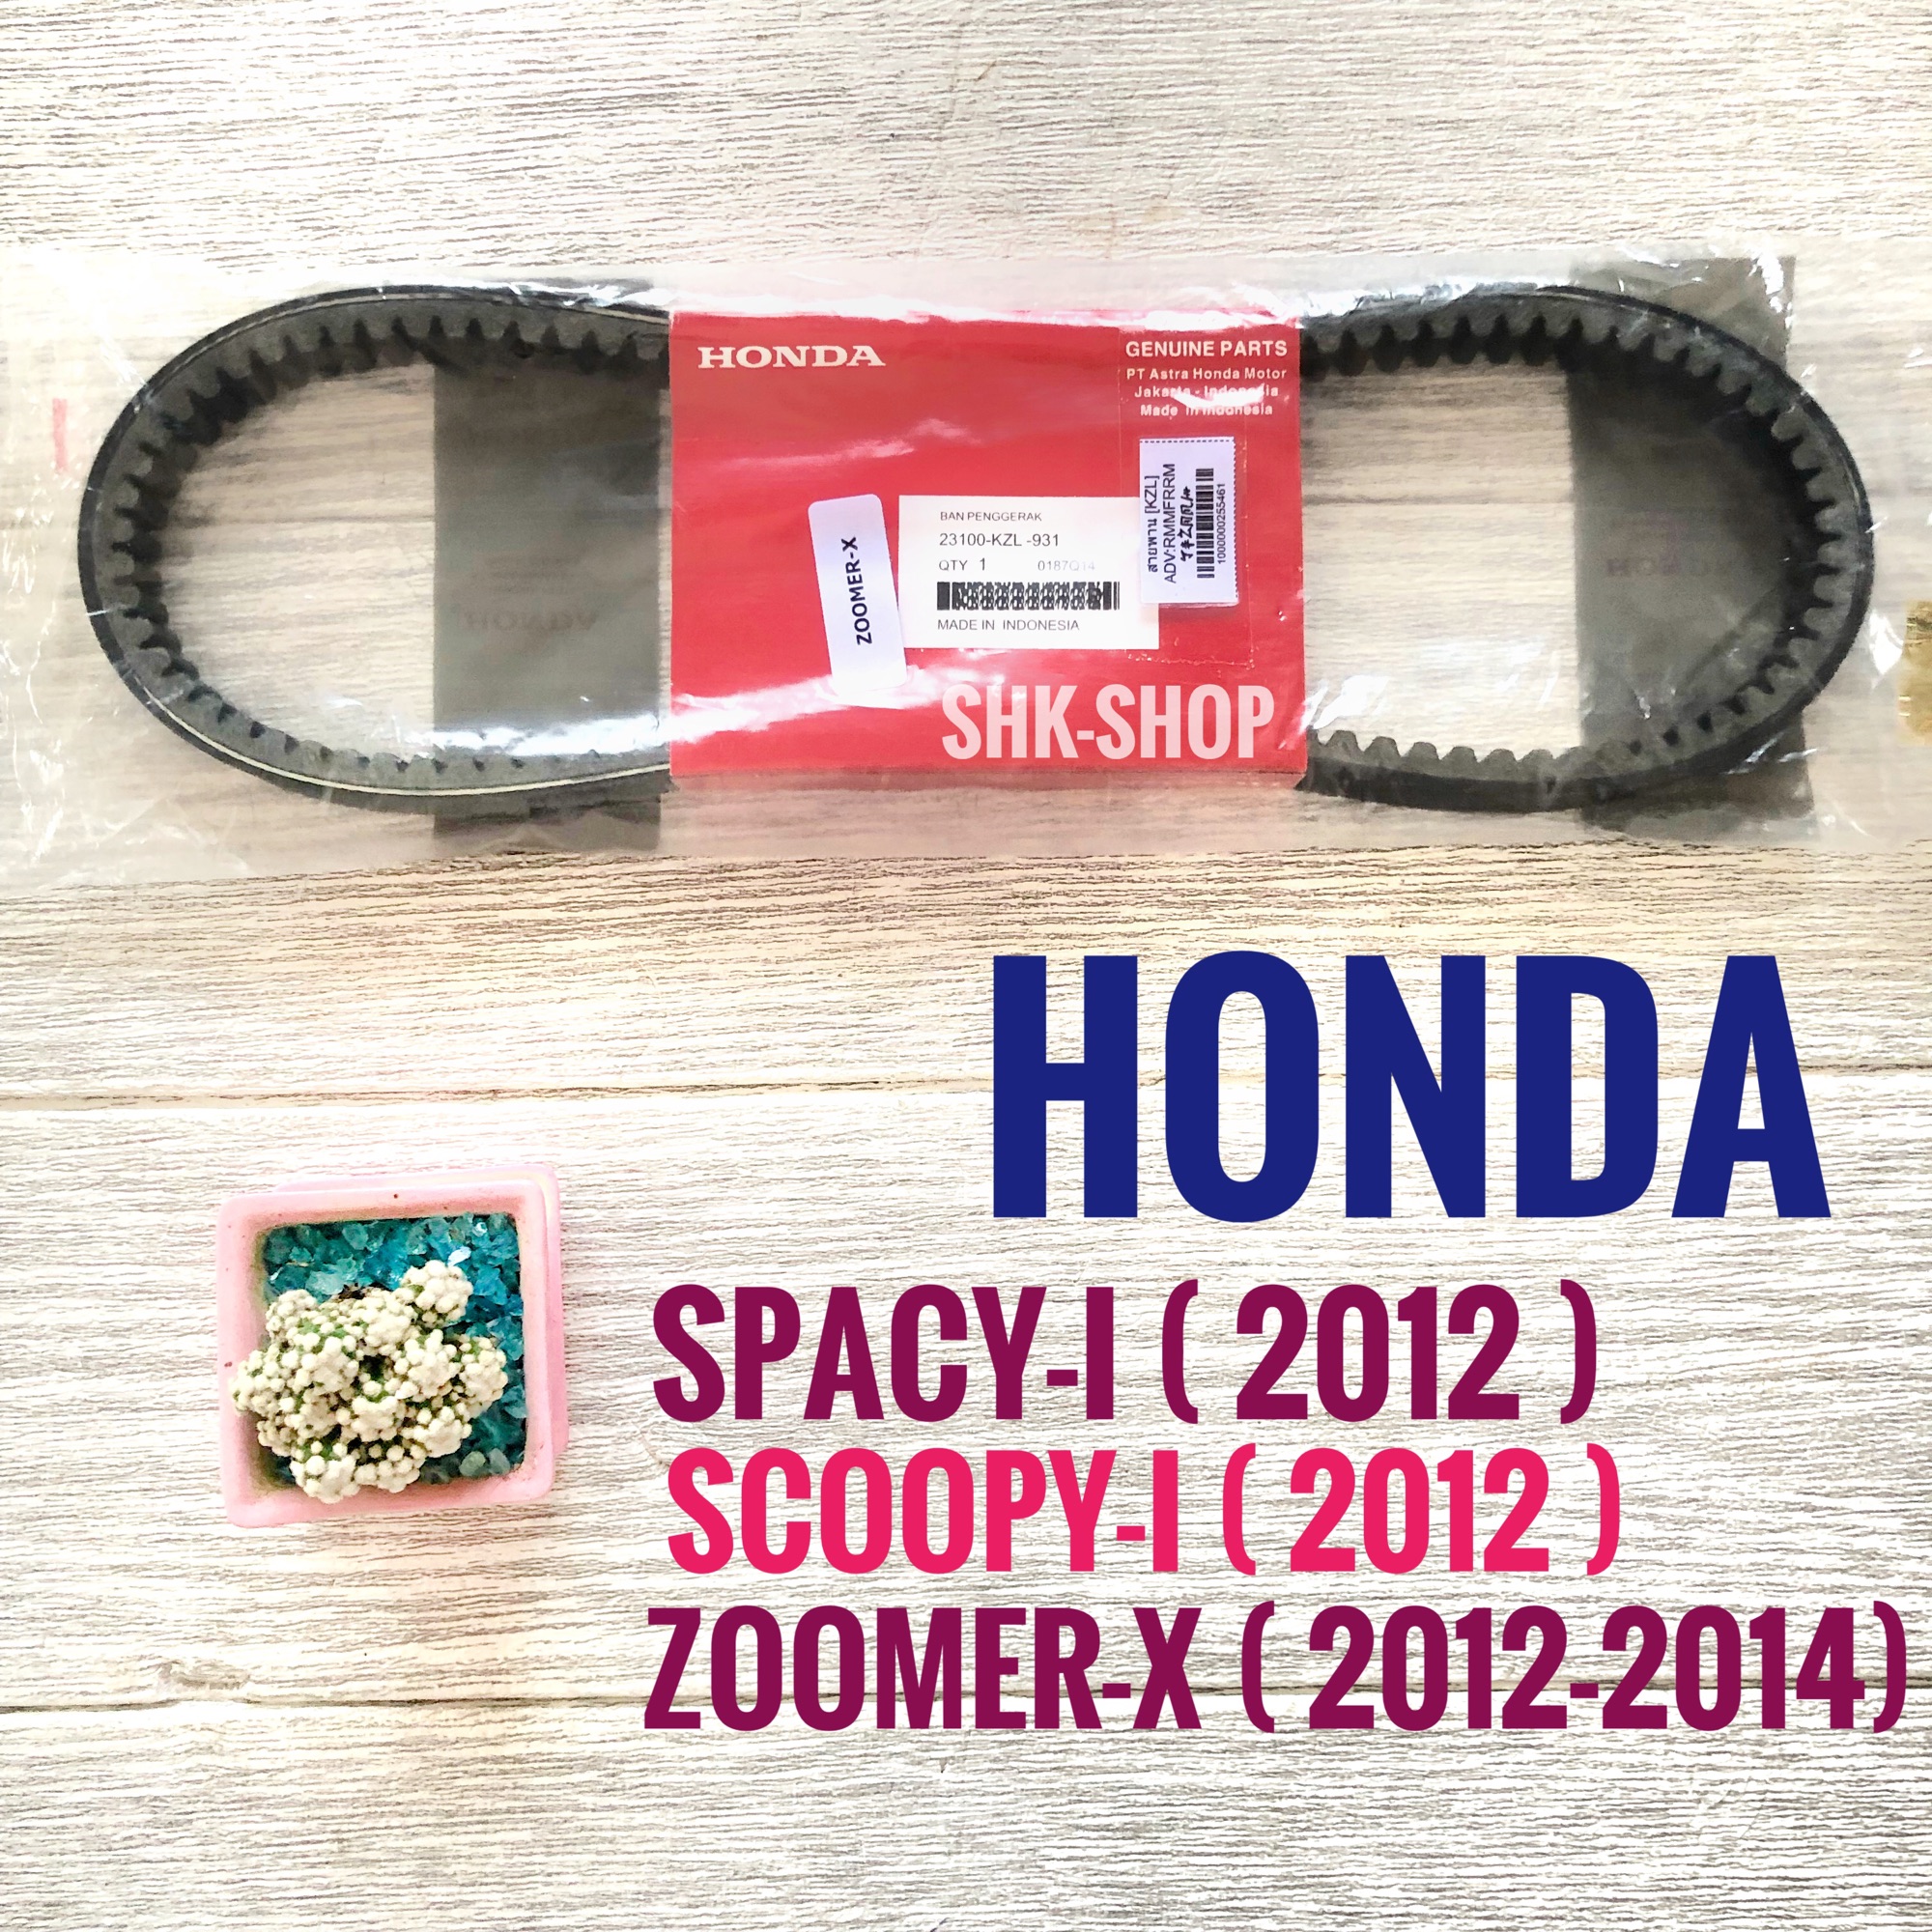 สายพาน แท้ ศูนย์ อินโดนีเซีย HONDA SCOOPY-I (2013) , ZOOMER-X (2012 ,2014) , SPACY-I (2012) 23100-KZL-931